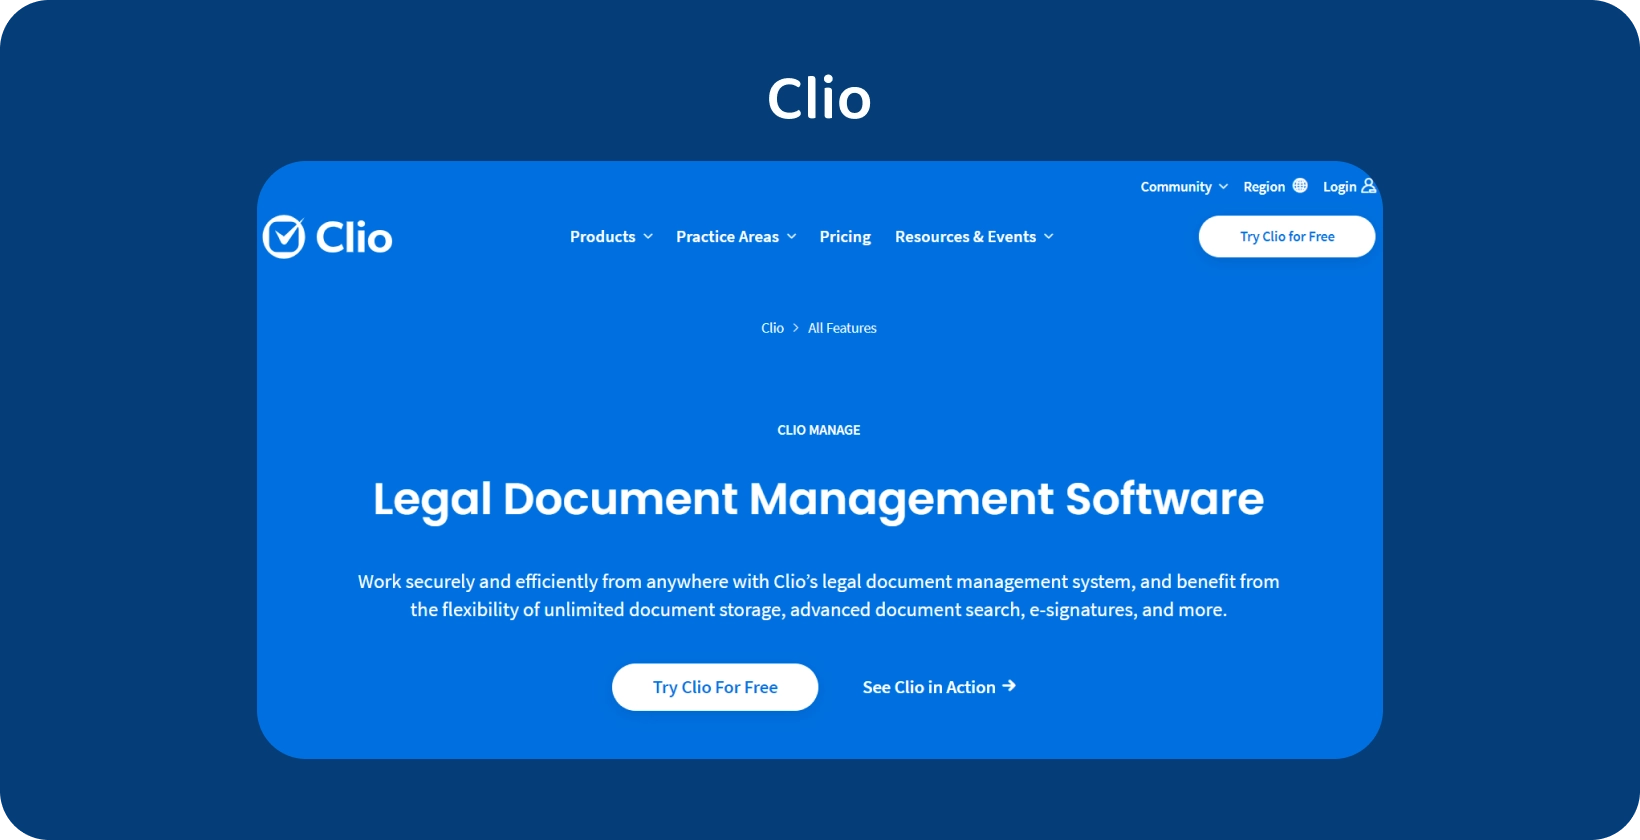 A Clio felhasználói felülete bemutatja a Jogi dokumentumkezelő szoftvert, amely optimalizálja a szervezett iratkezelést.